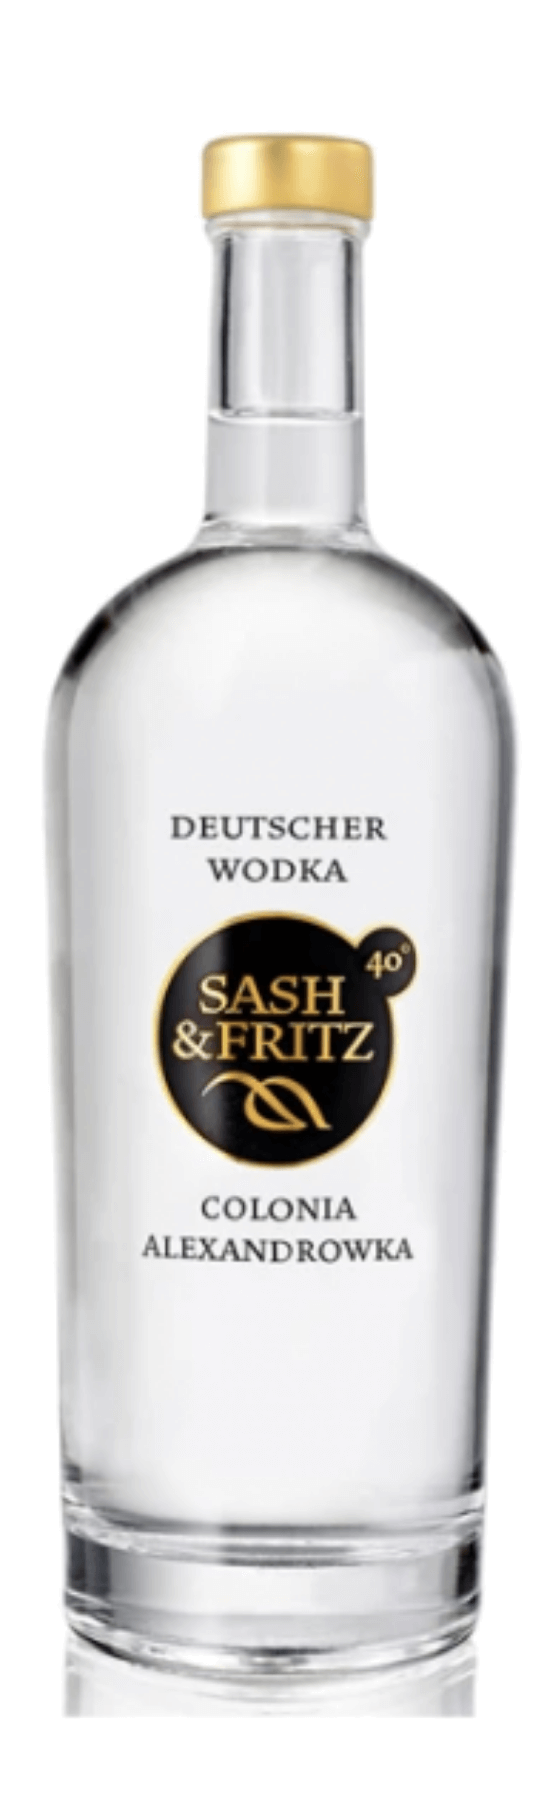 Sash & Fritz Wodka 40% vol.